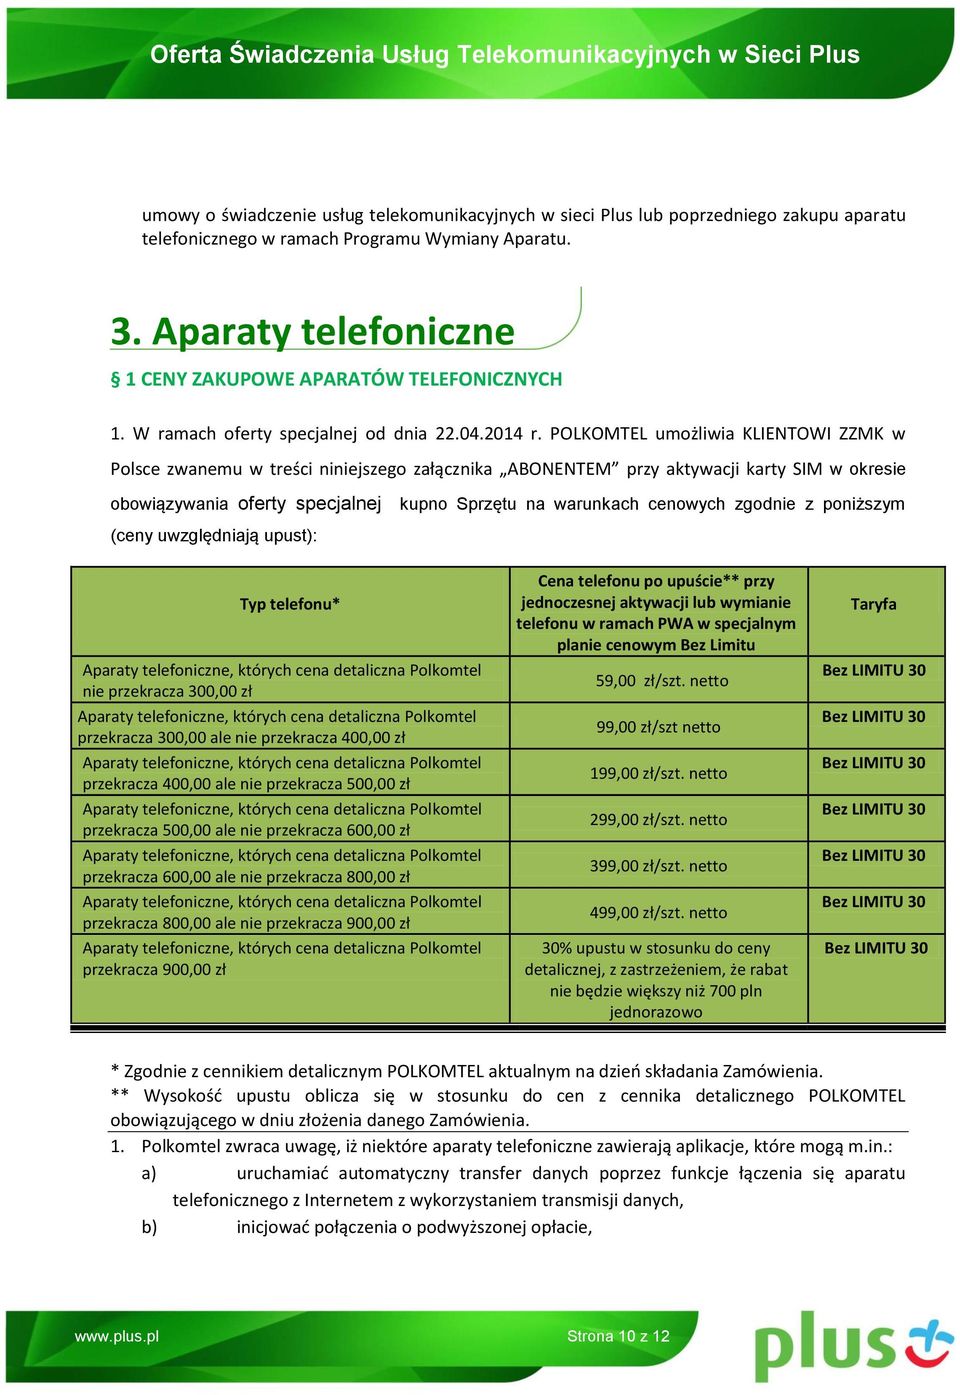 POLKOMTEL umożliwia KLIENTOWI ZZMK w Polsce zwanemu w treści niniejszego załącznika ABONENTEM przy aktywacji karty SIM w okresie obowiązywania oferty specjalnej kupno Sprzętu na warunkach cenowych